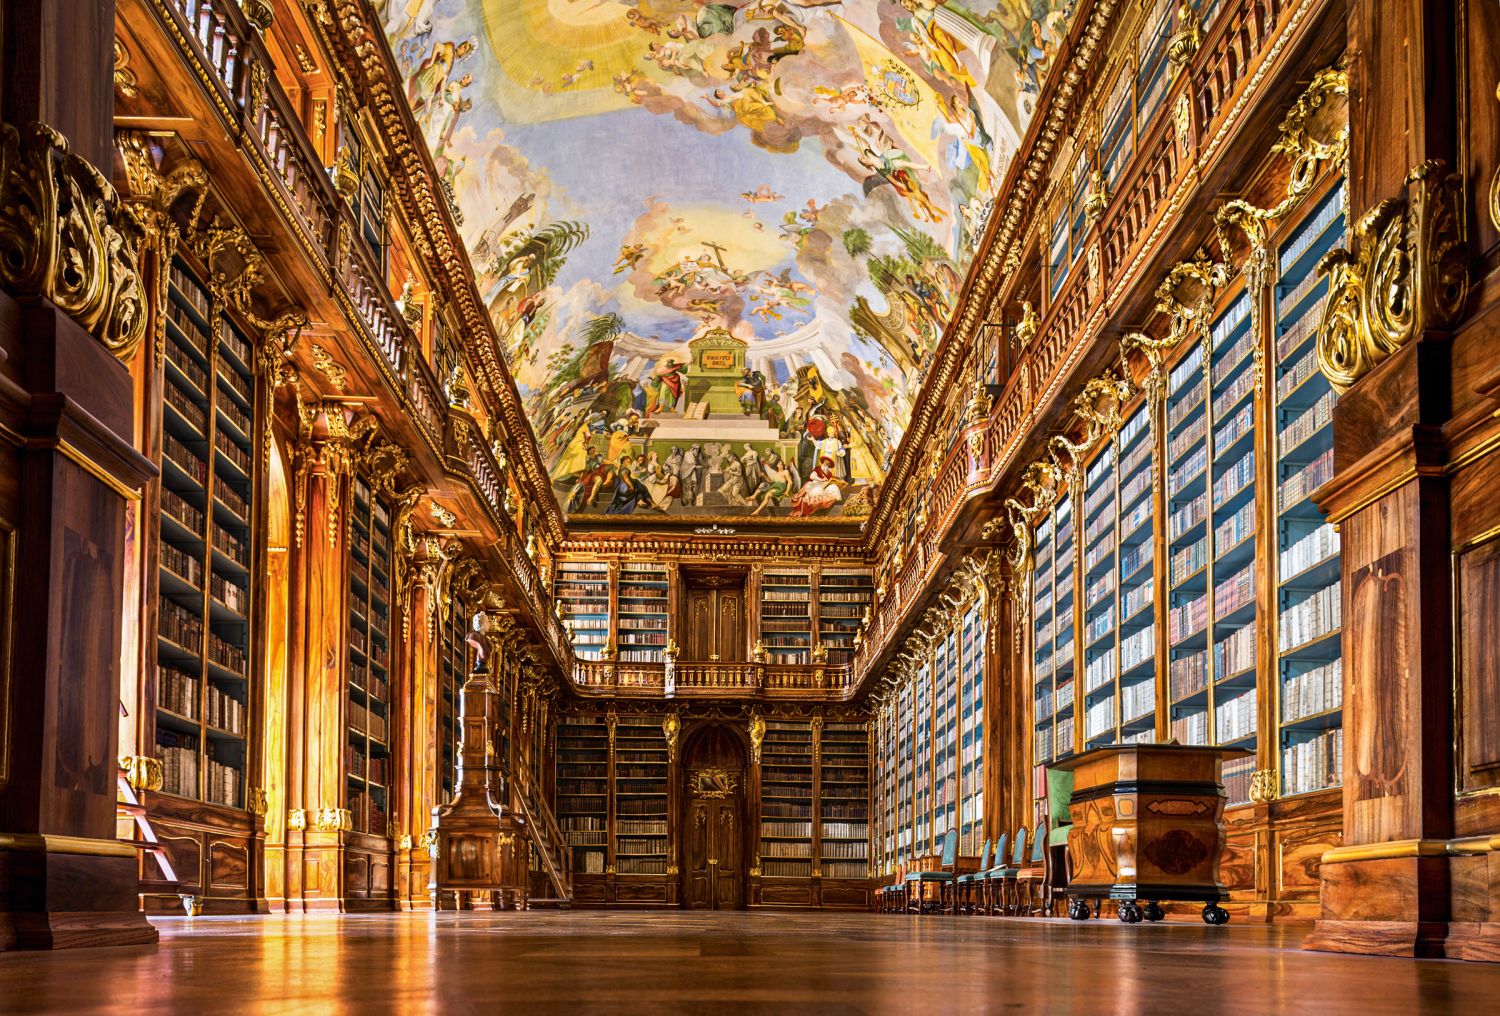 Die Bibliothek im Kloster Strahov ­beeindruckt mit ihrem prächtigen Barocksaal.